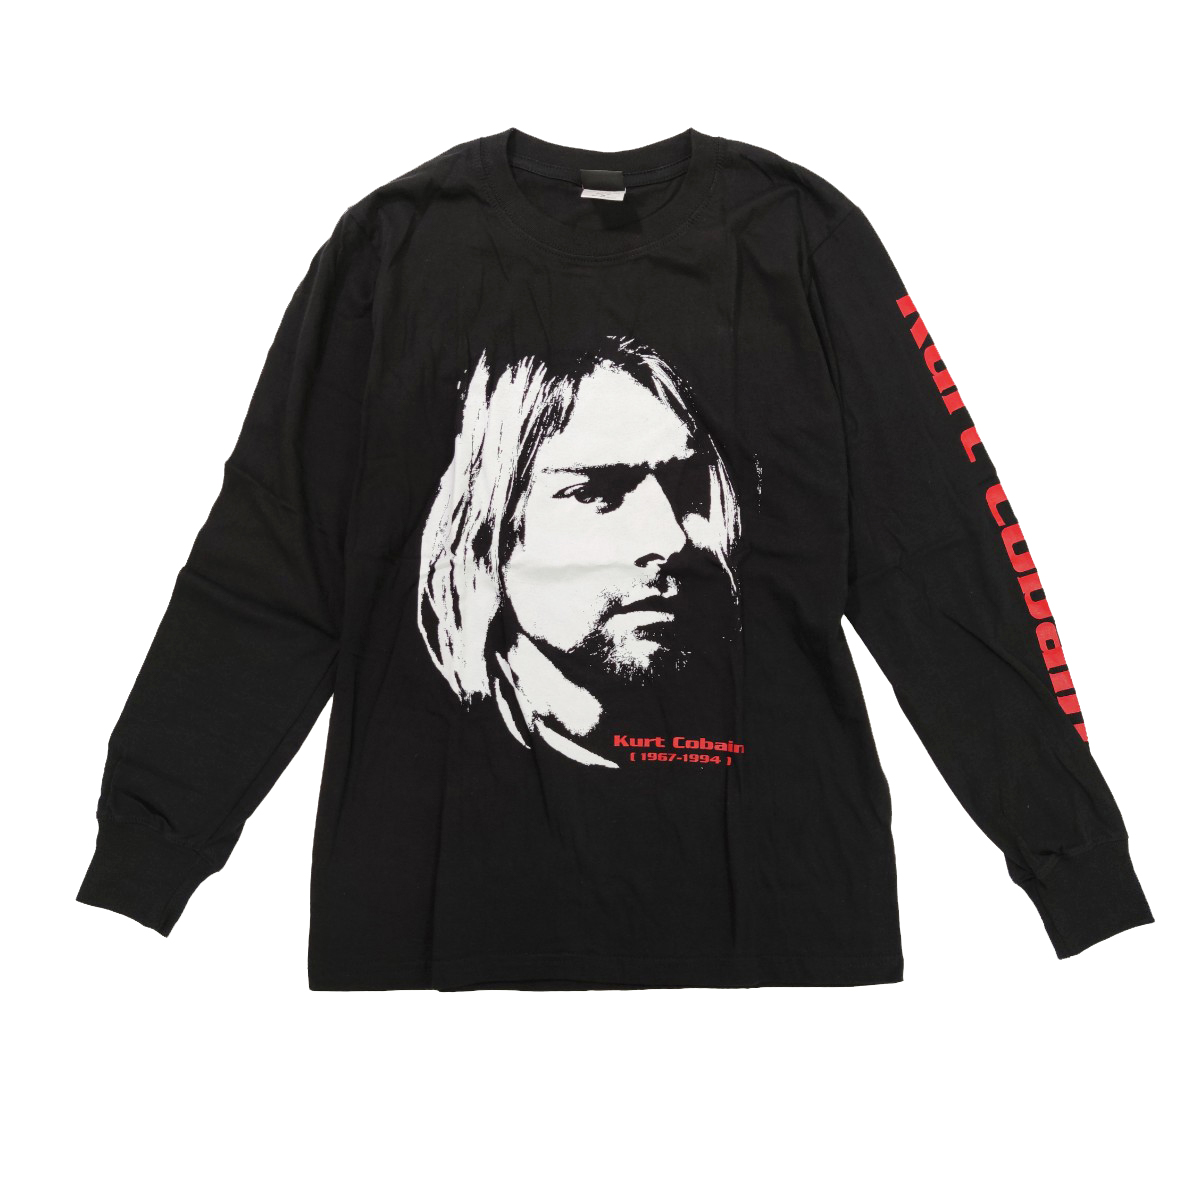 ロックTシャツ ロンT Kurt Cobain カート・コバーン 1967-1994 袖プリント agl-0023